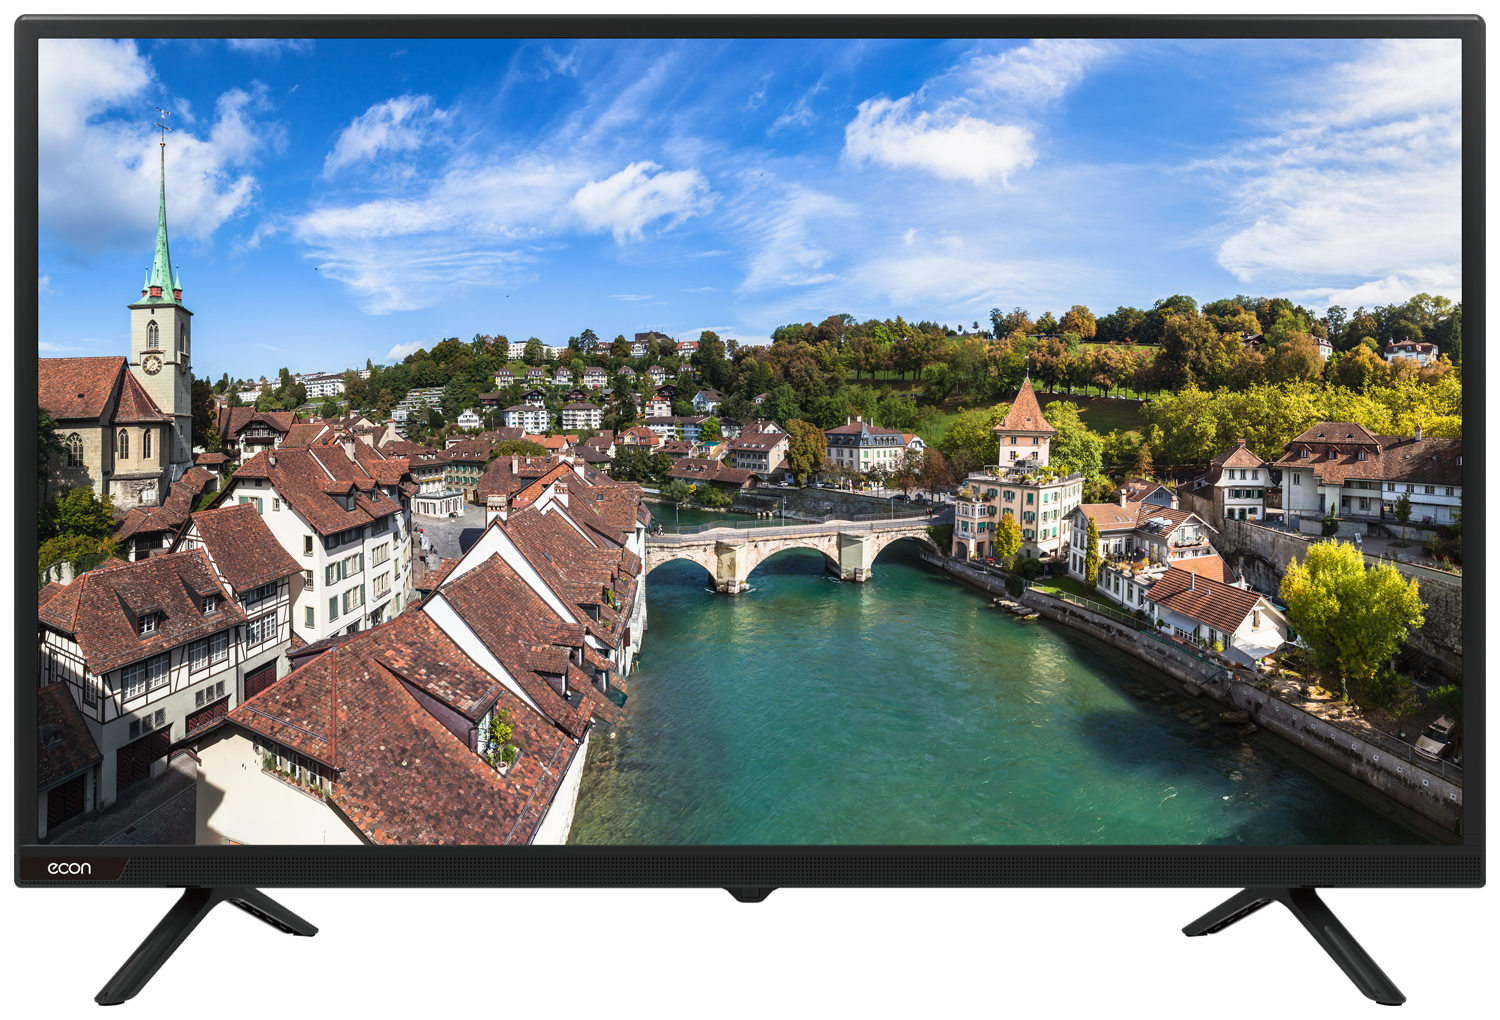 Картинка Smart телевизор ECON EX-32HS006B по разумной цене купить в интернет магазине mall.su